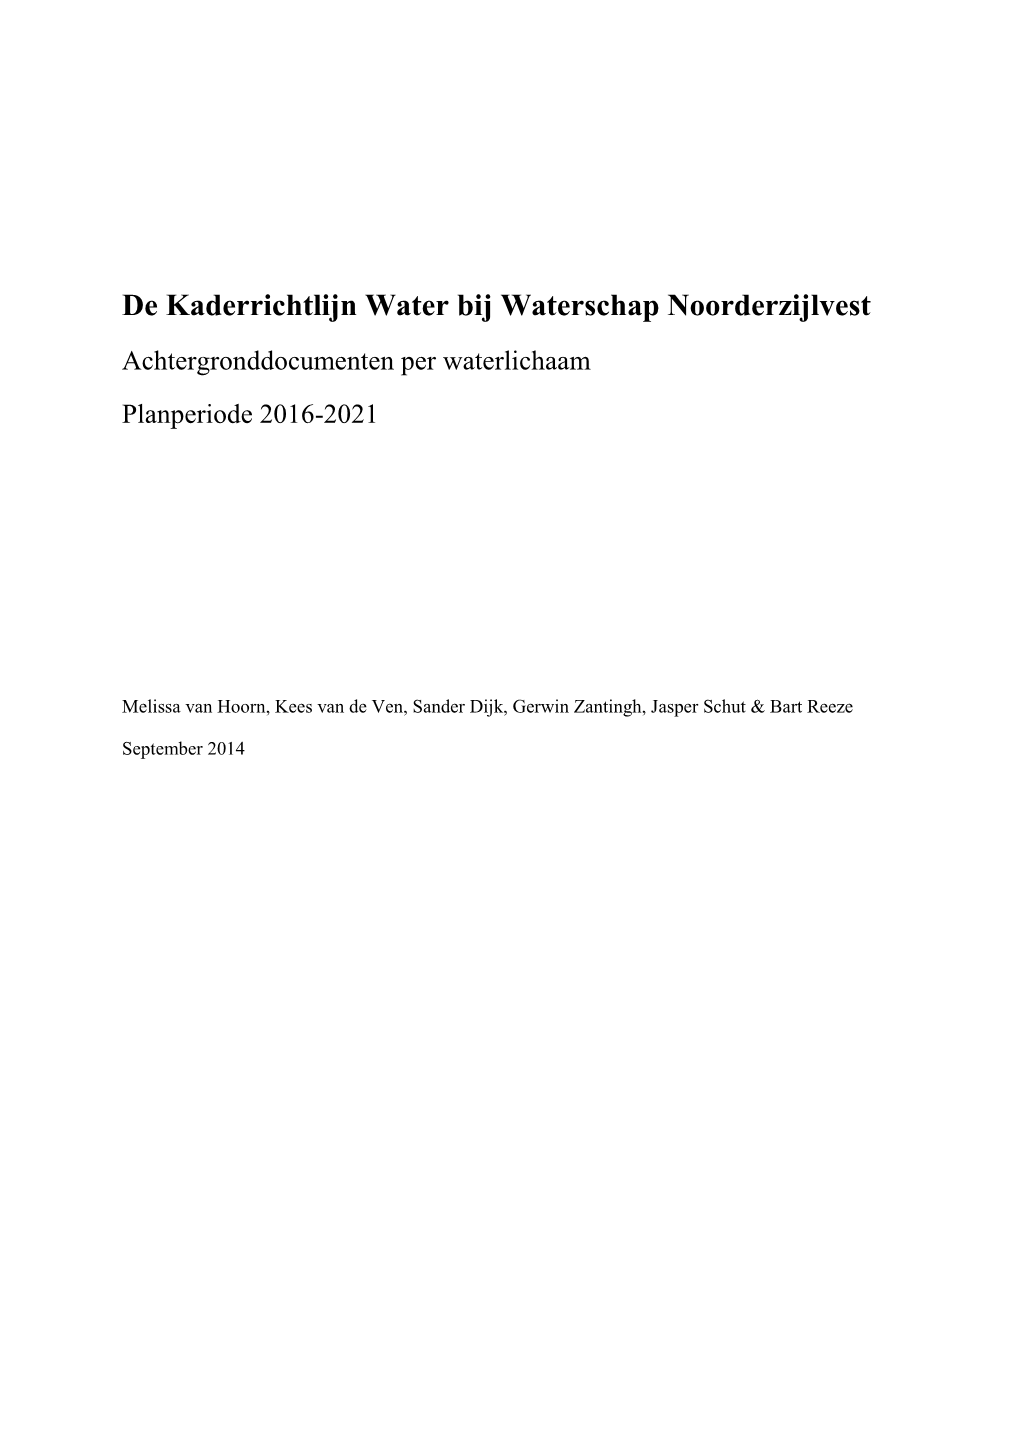 De Kaderrichtlijn Water Bij Waterschap Noorderzijlvest Achtergronddocumenten Per Waterlichaam Planperiode 2016-2021